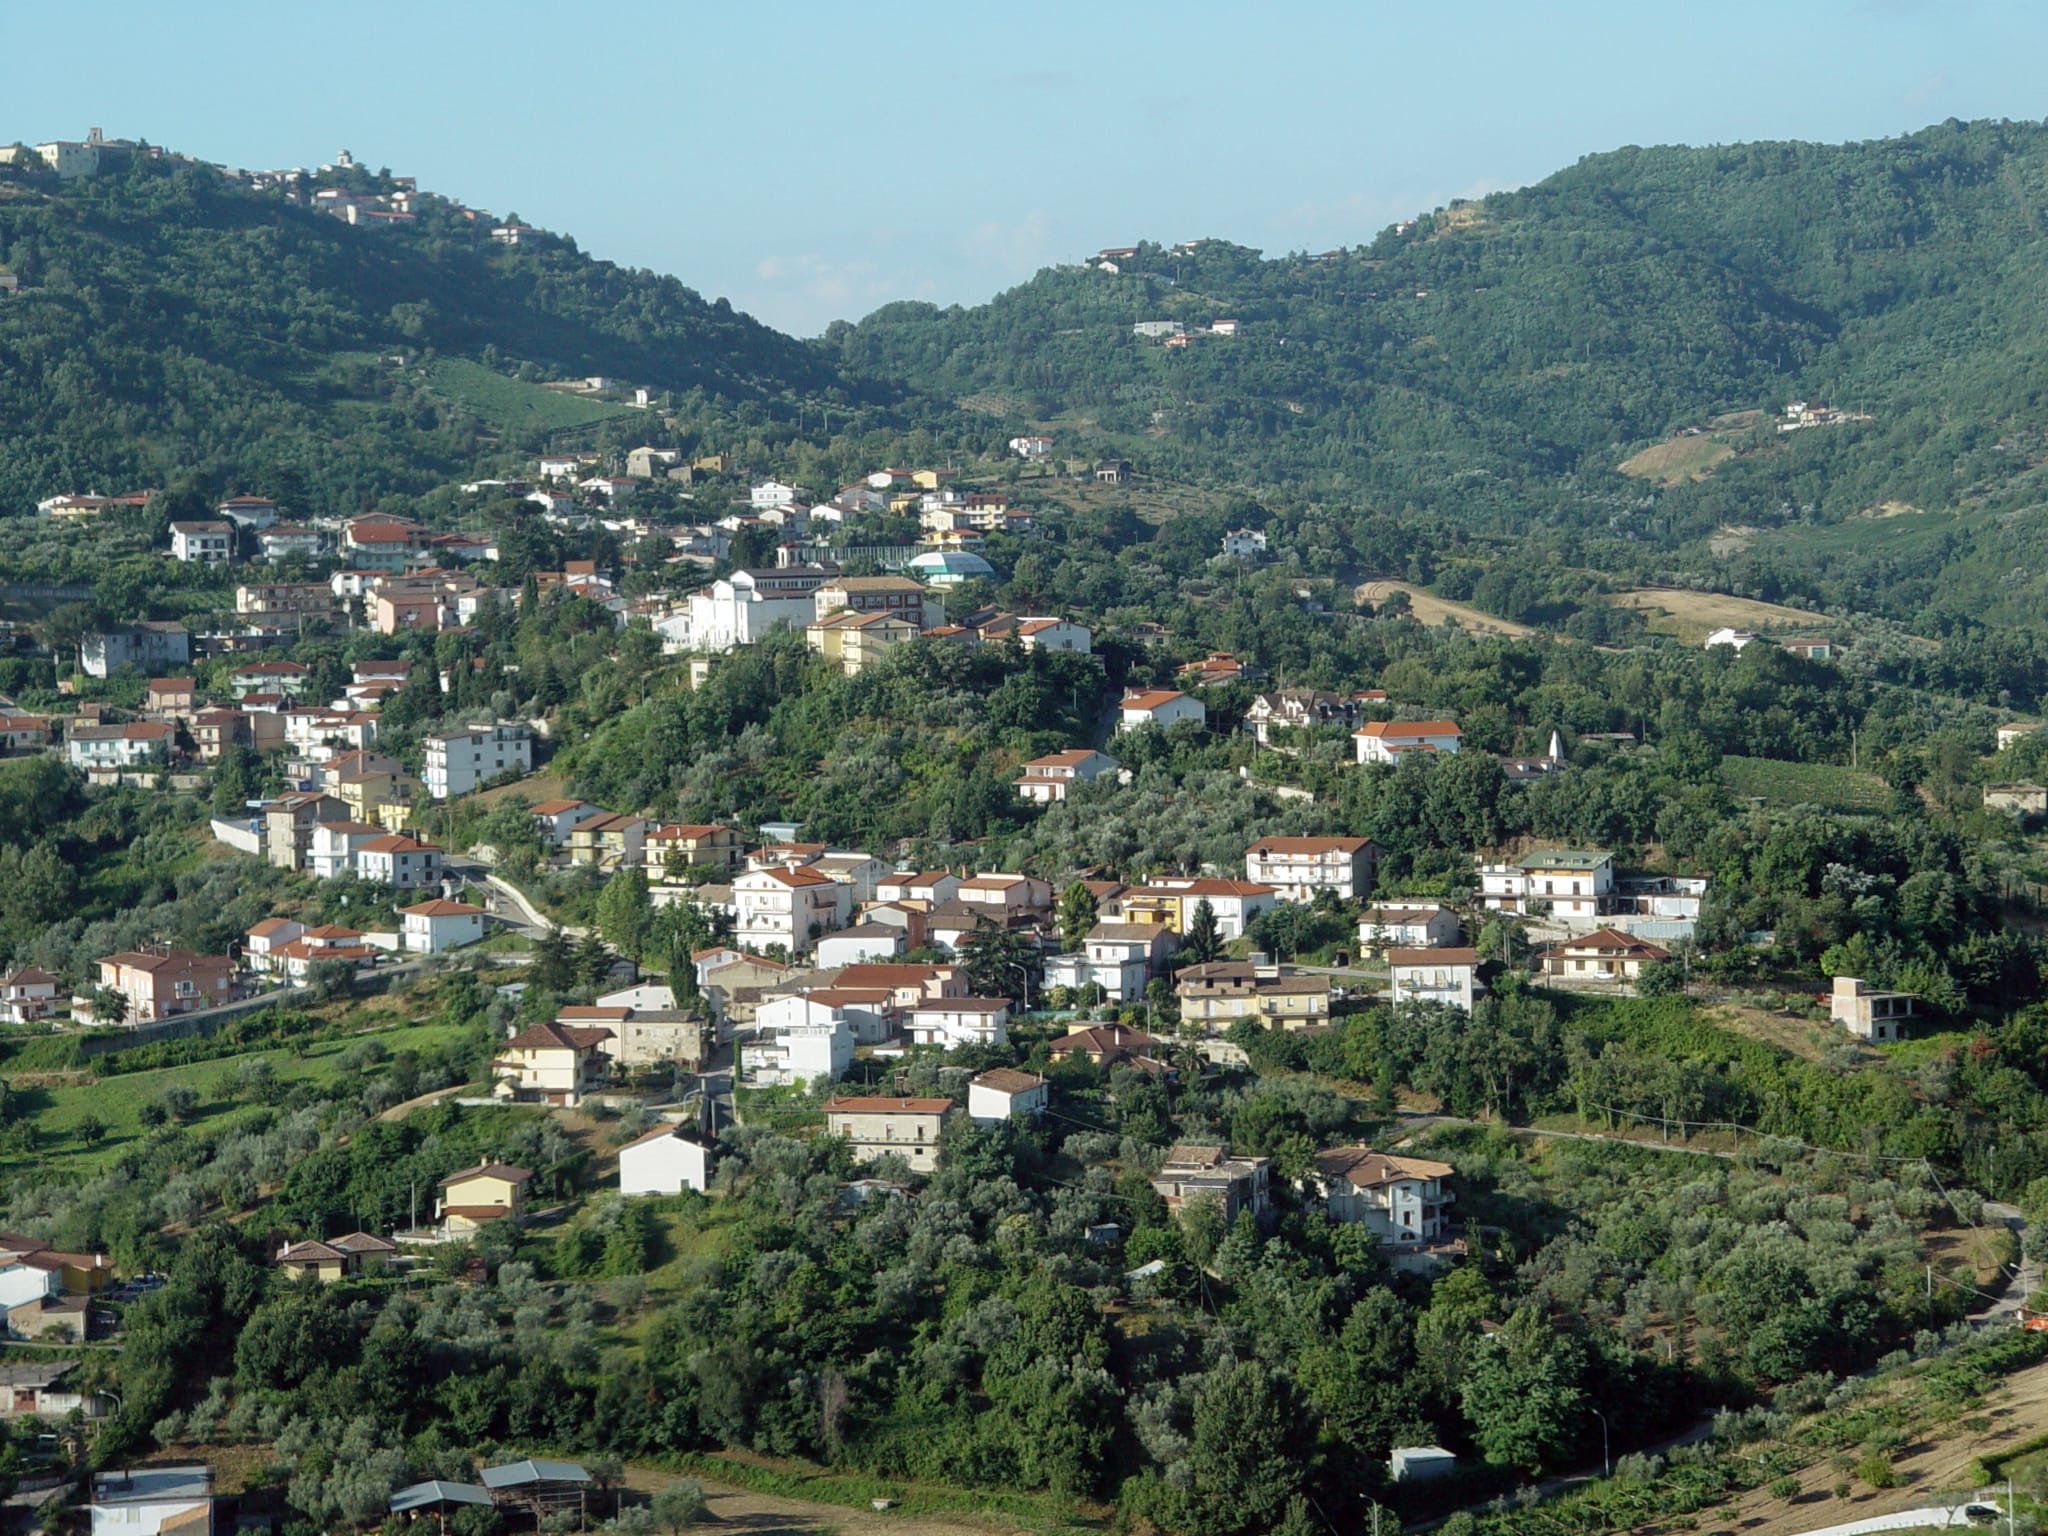 City of San Nazzaro